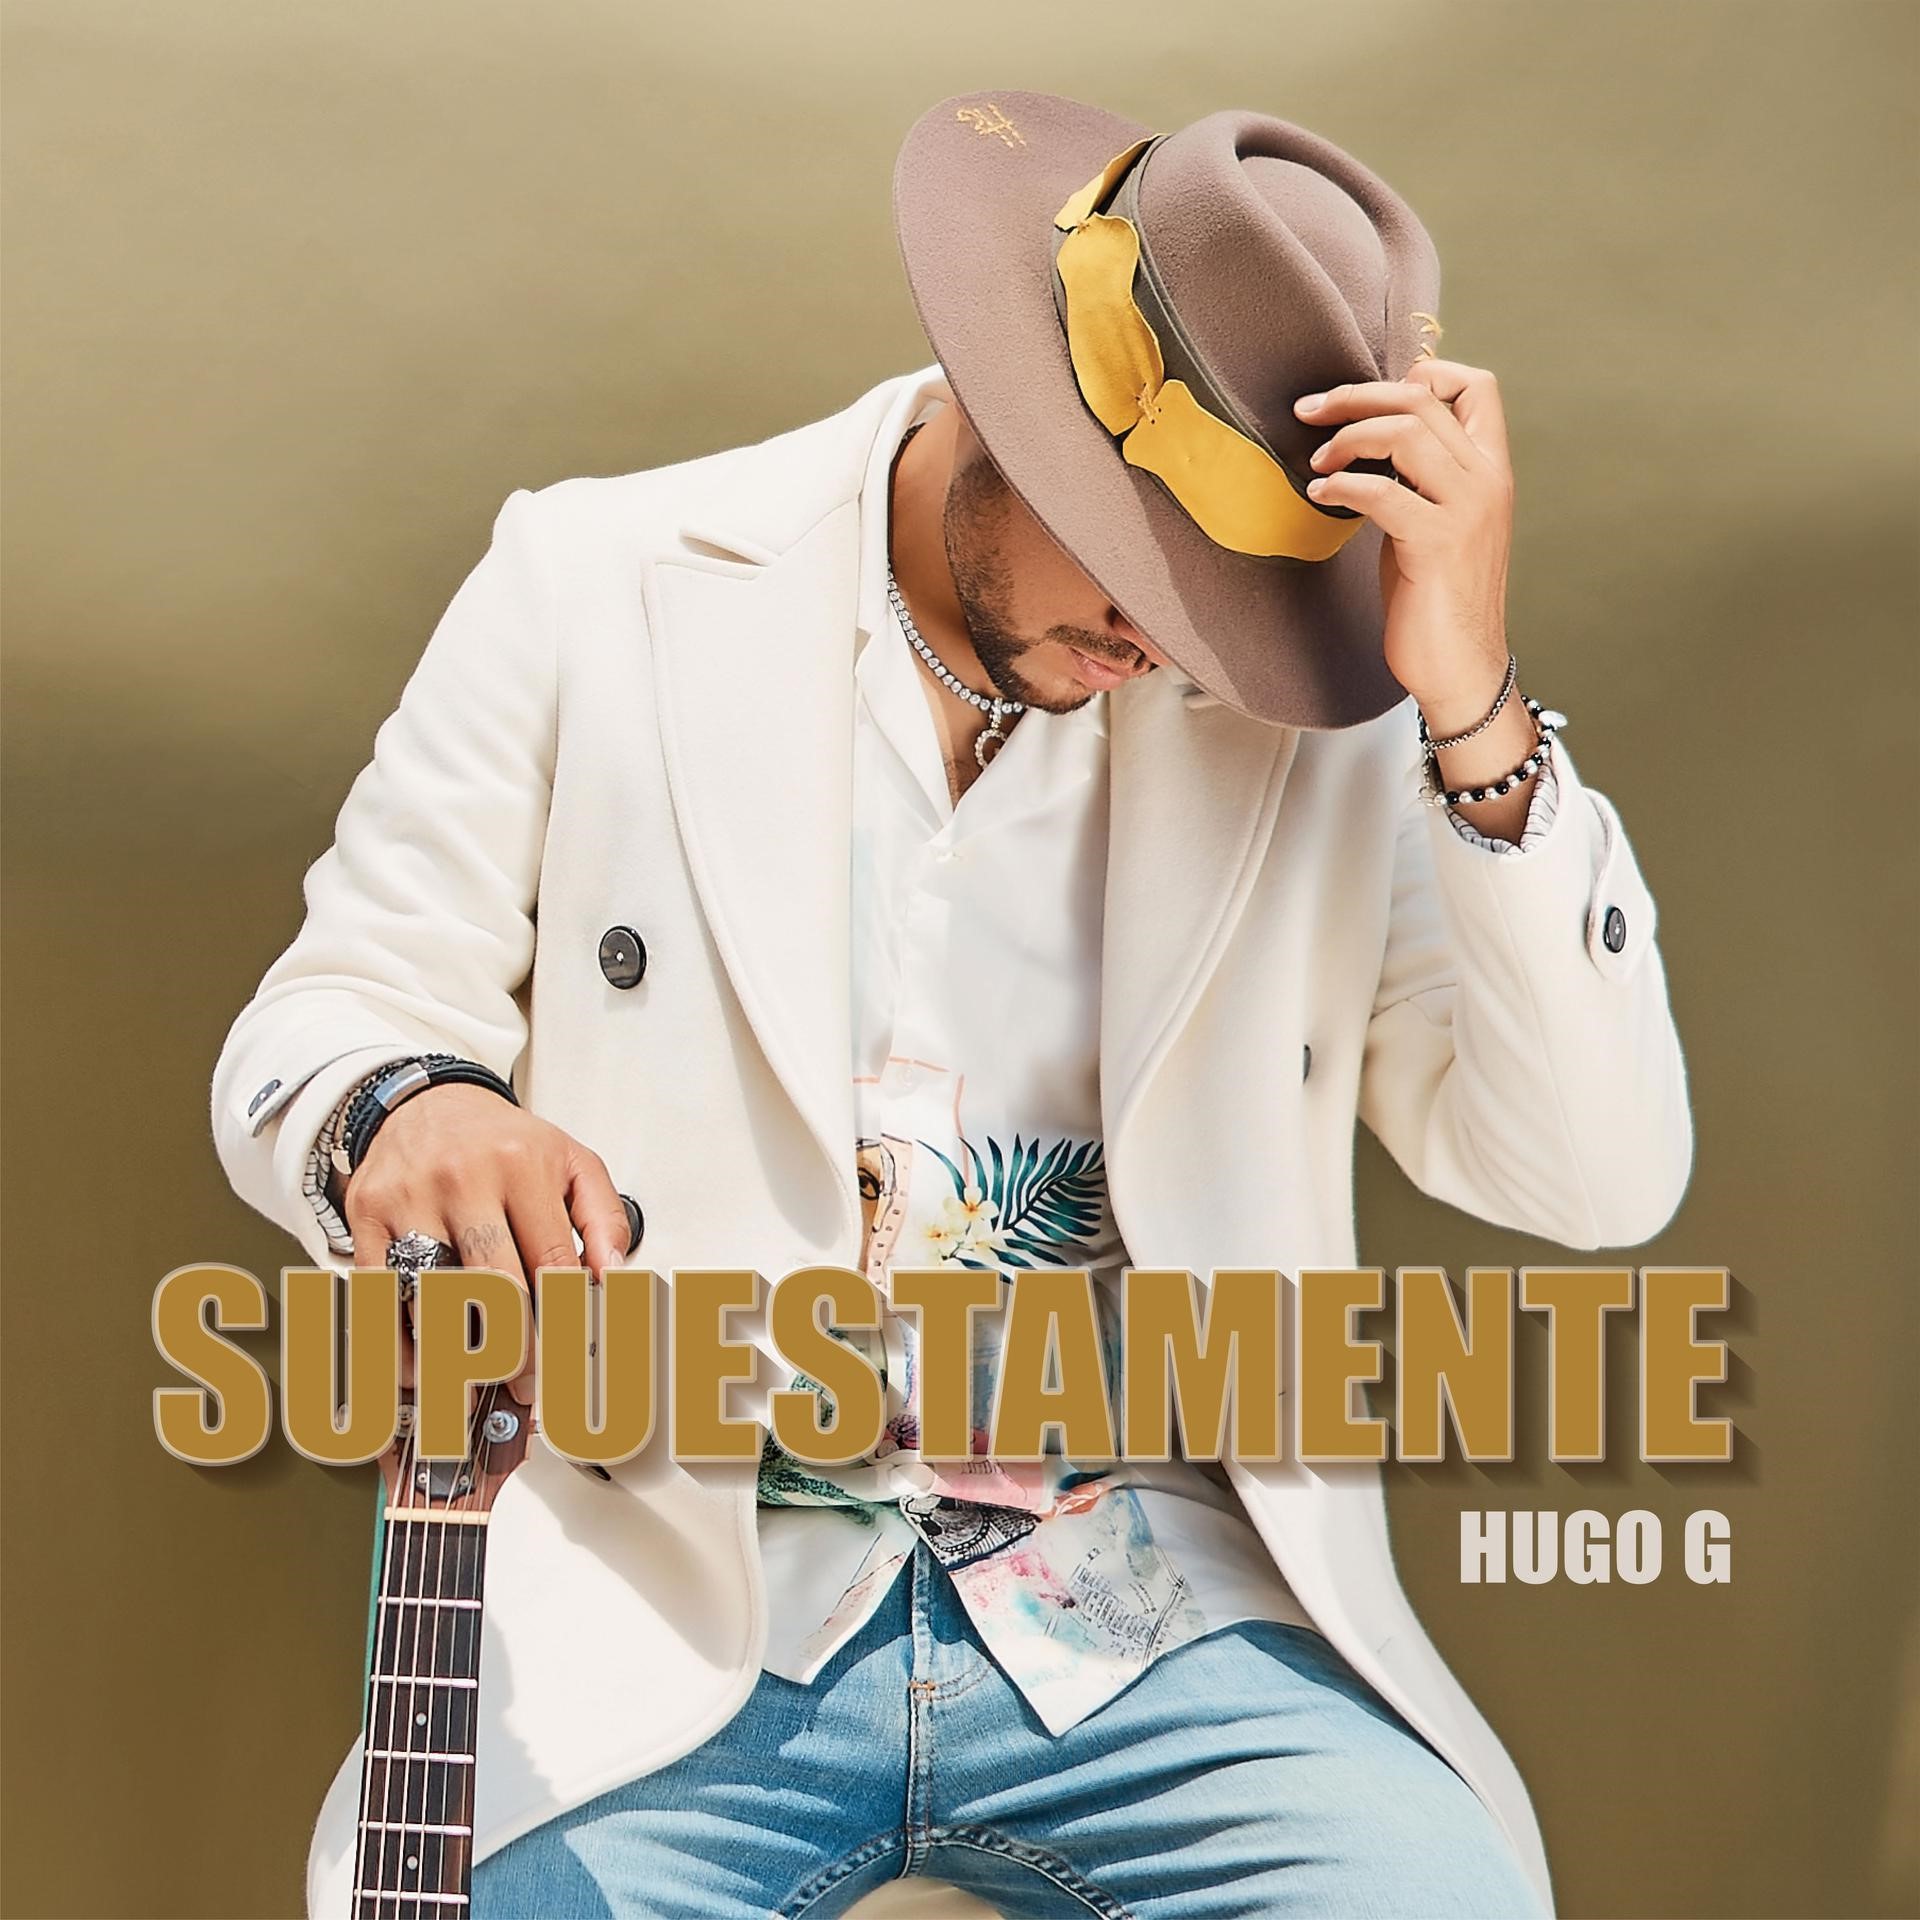 Hugo G transforma la balada con su nuevo single ‘Supuestamente’